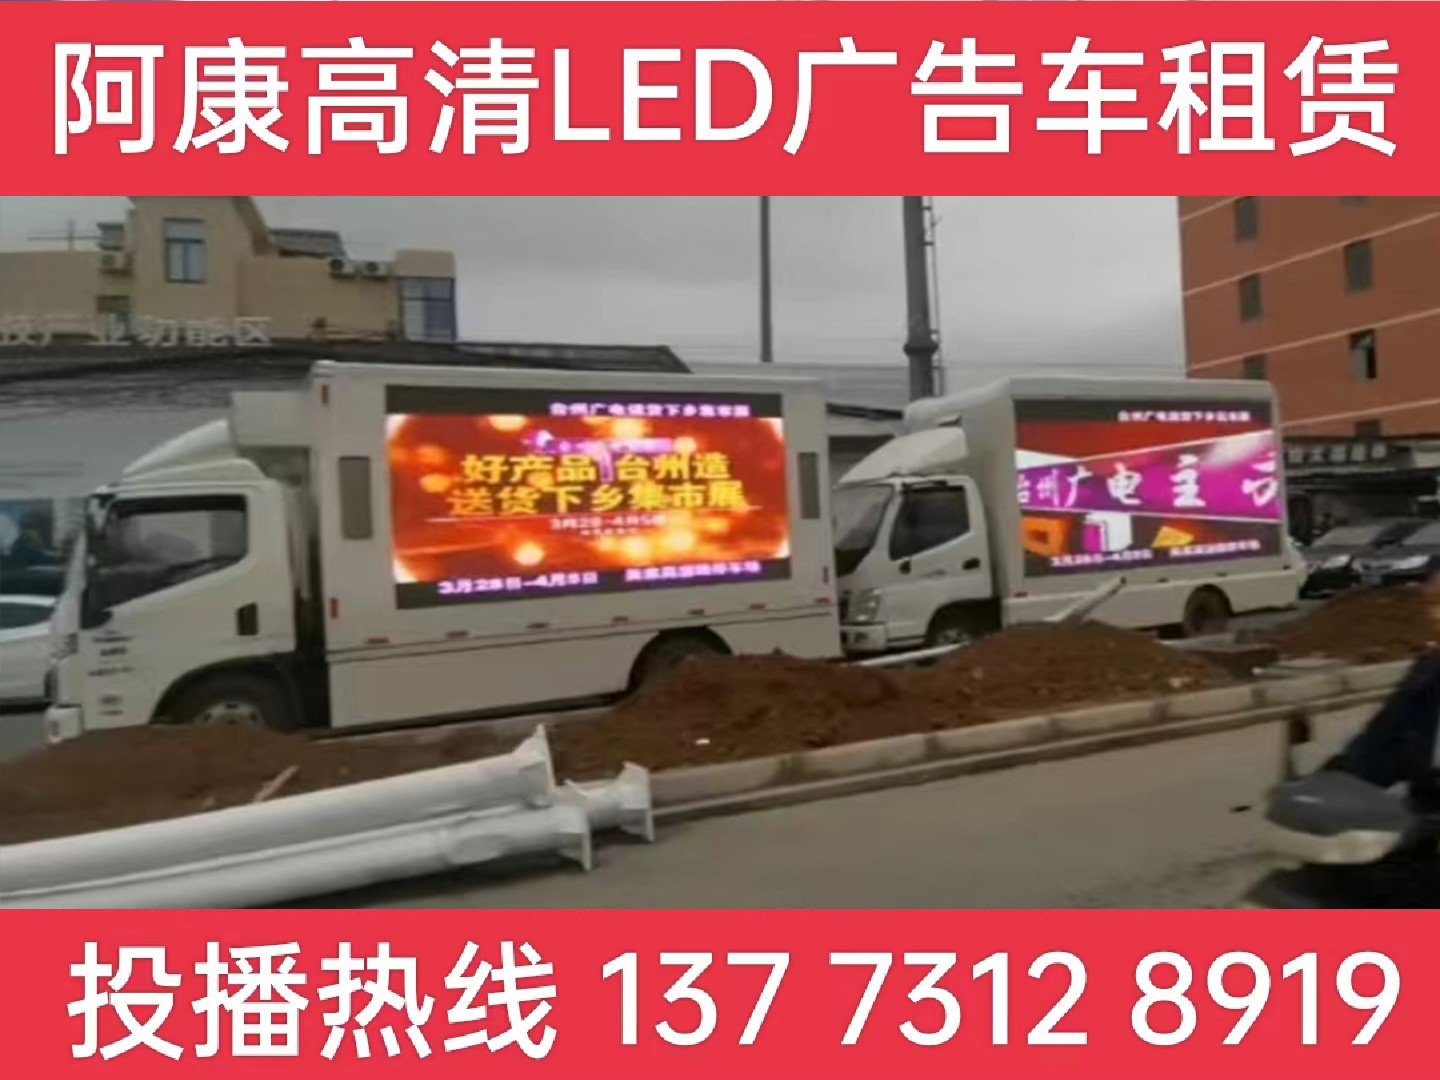 金坛LED宣传车租赁